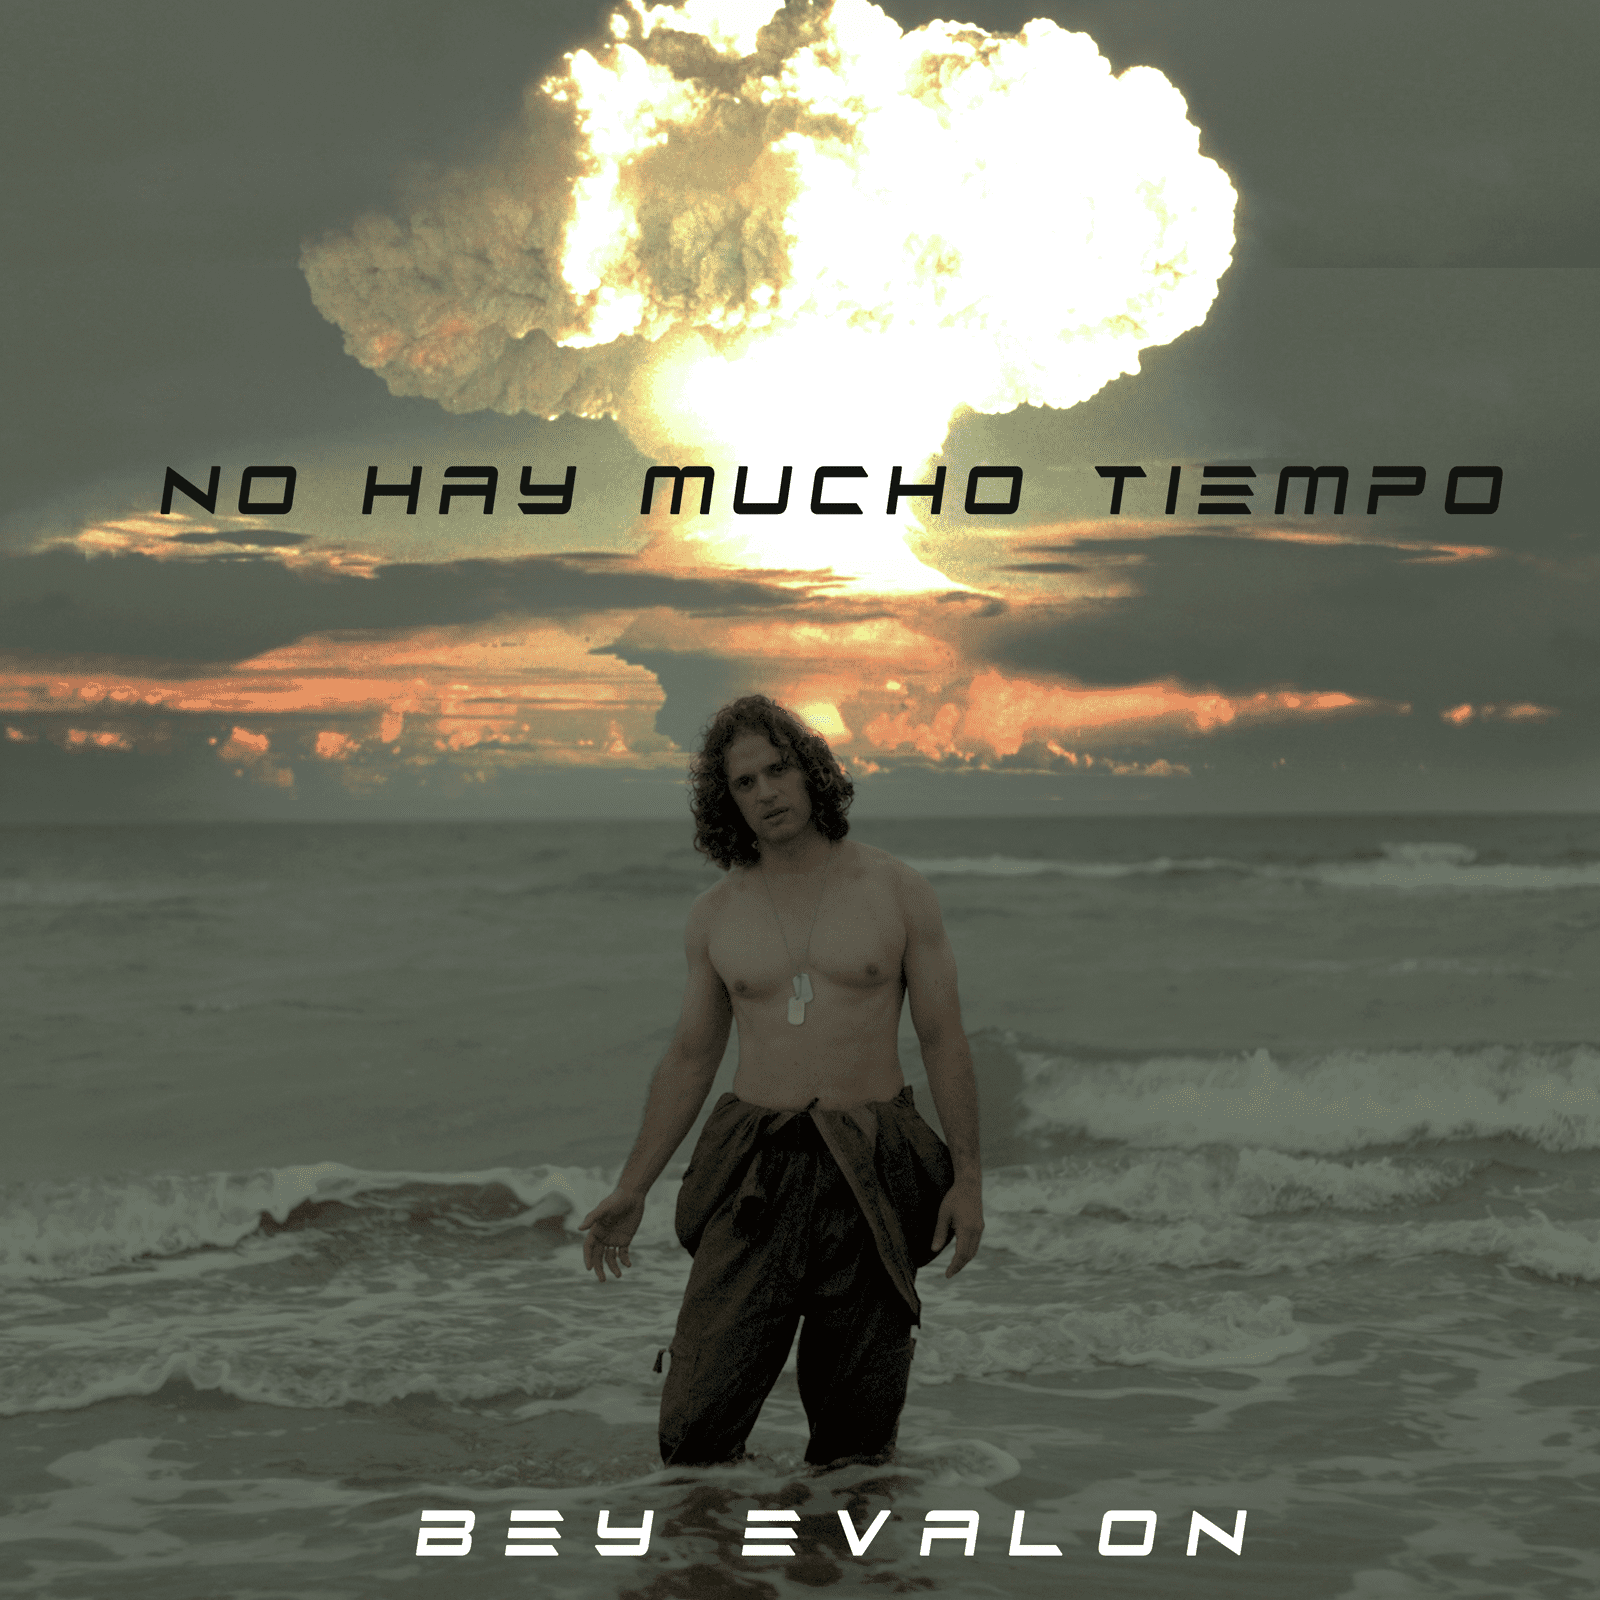 Bey Evalon el artista venezolano que alza su voz en contra de las guerras con su nuevo single “No Hay Mucho Tiempo”